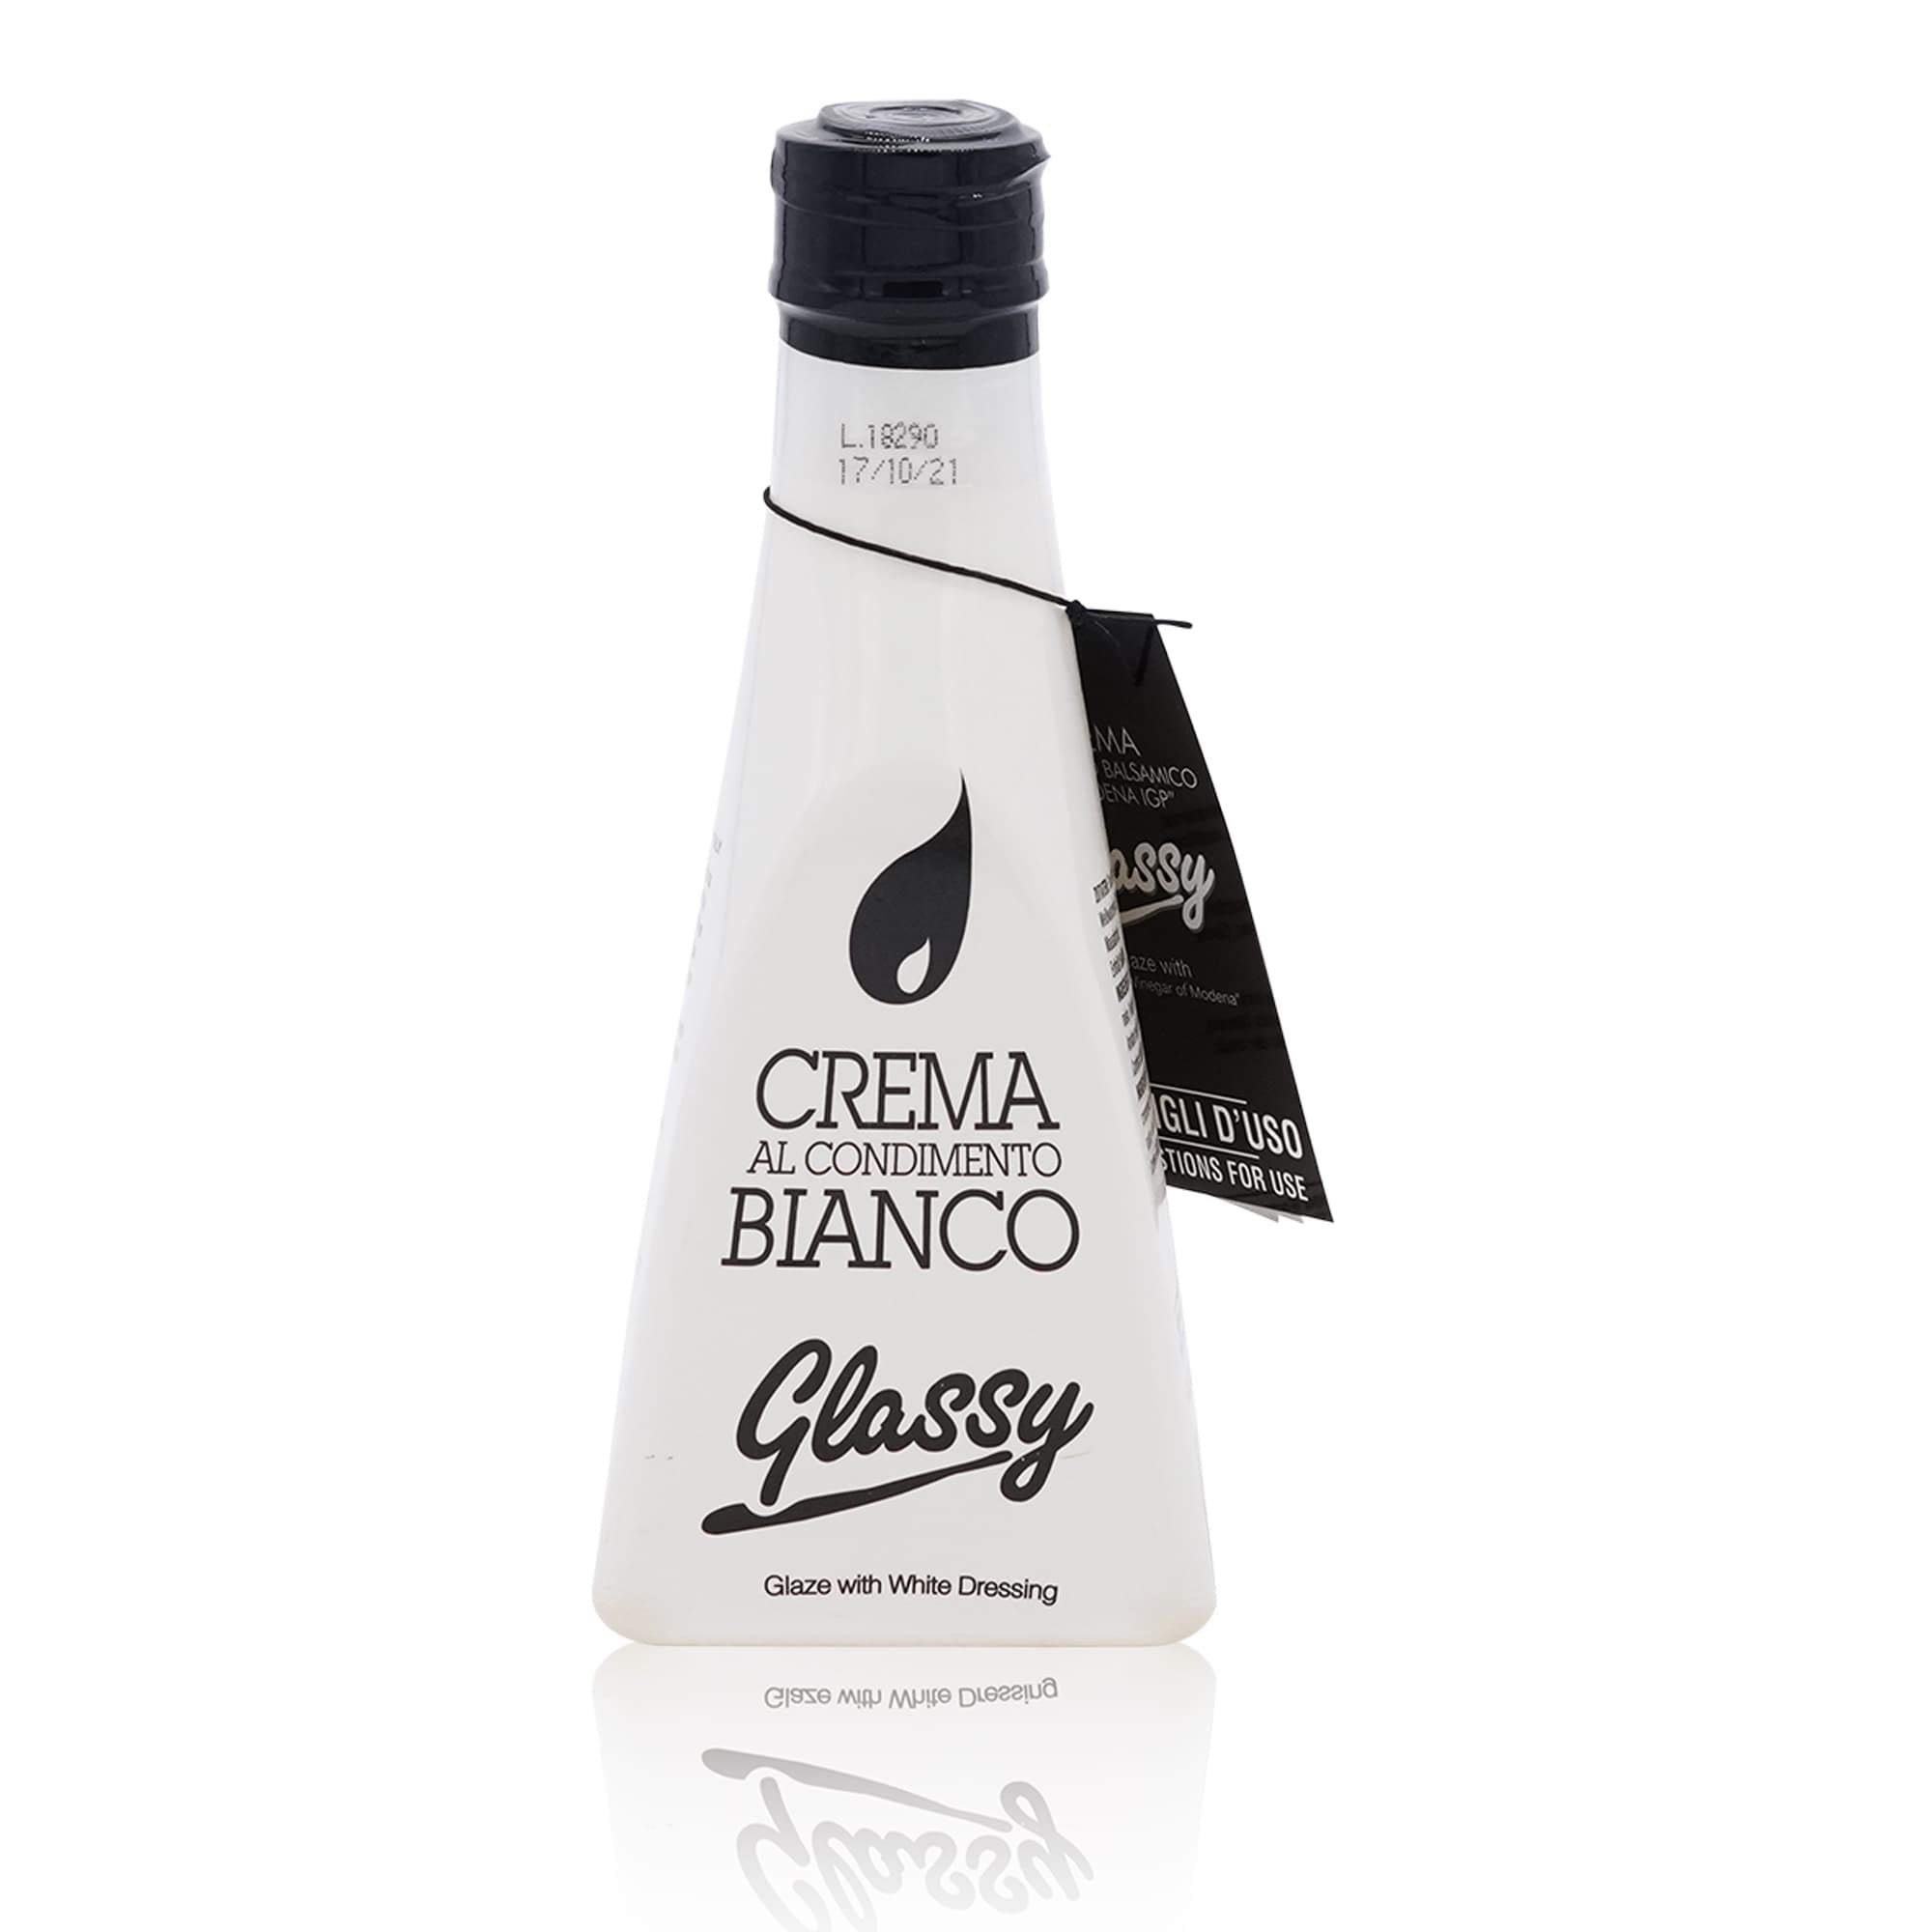 BELLEI Glassy Crema al condimento bianco – Weiße Balsamicocreme - 0,250l - italienisch-einkaufen.de